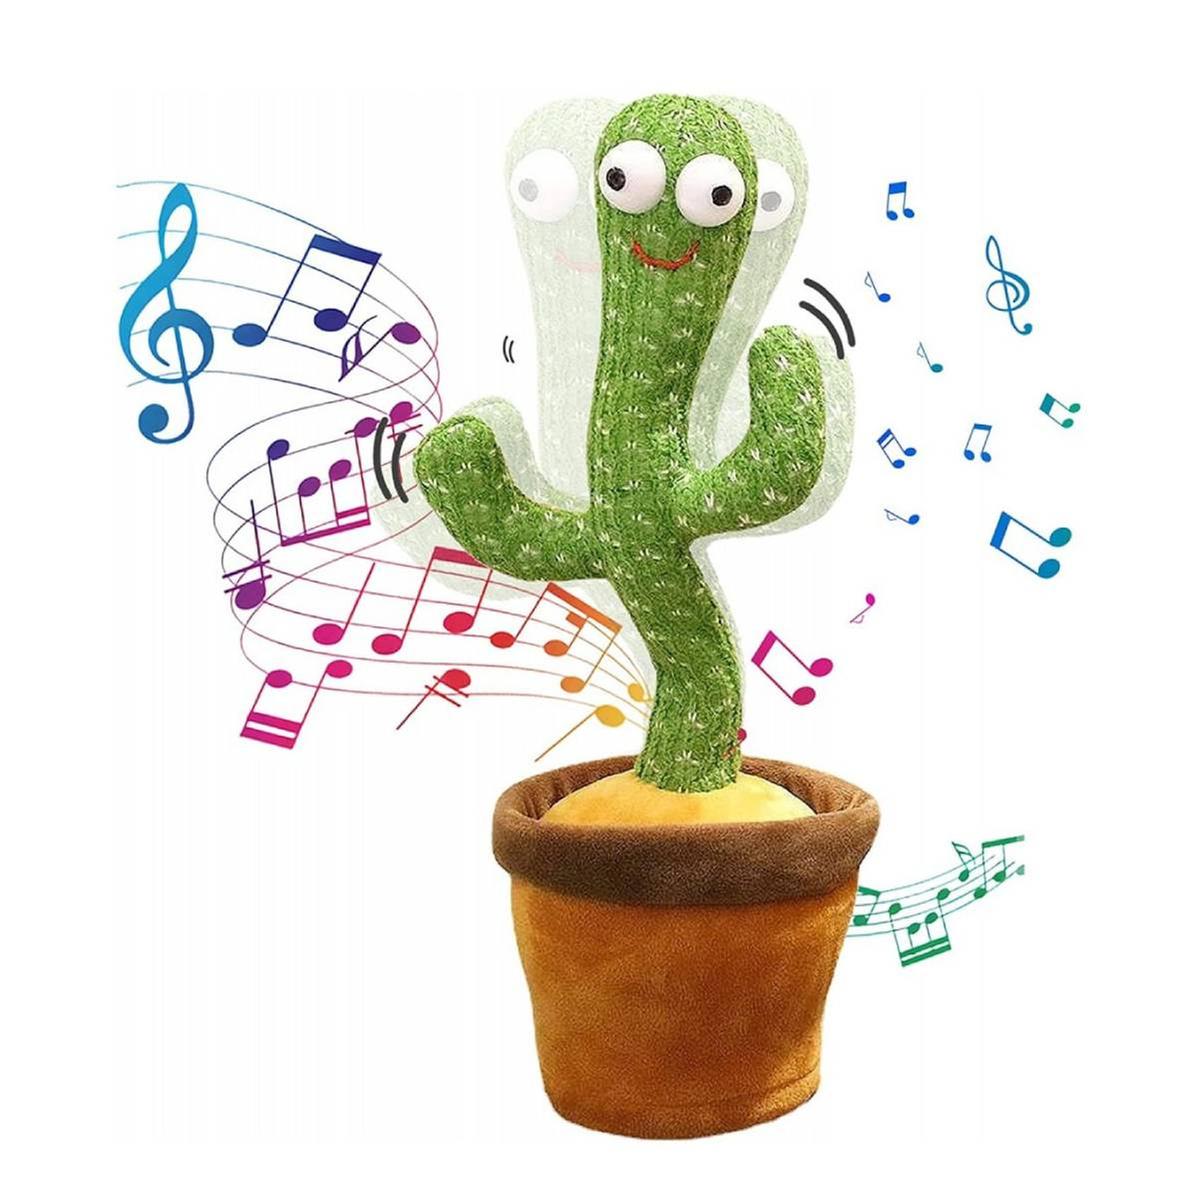 Cactus bailarín, juguete de cactus que habla repite lo que dices